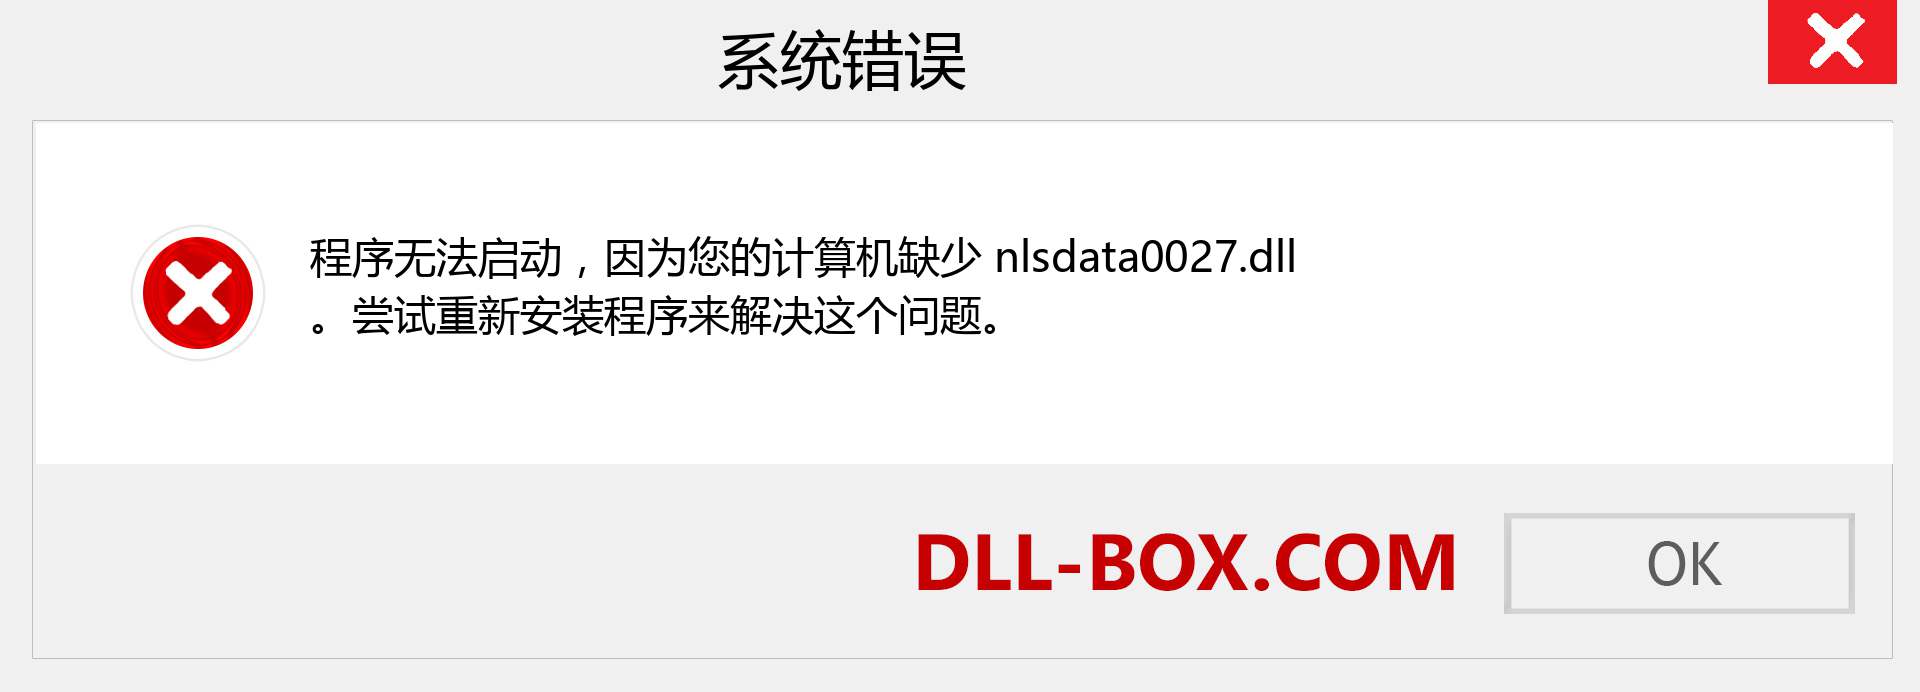 nlsdata0027.dll 文件丢失？。 适用于 Windows 7、8、10 的下载 - 修复 Windows、照片、图像上的 nlsdata0027 dll 丢失错误